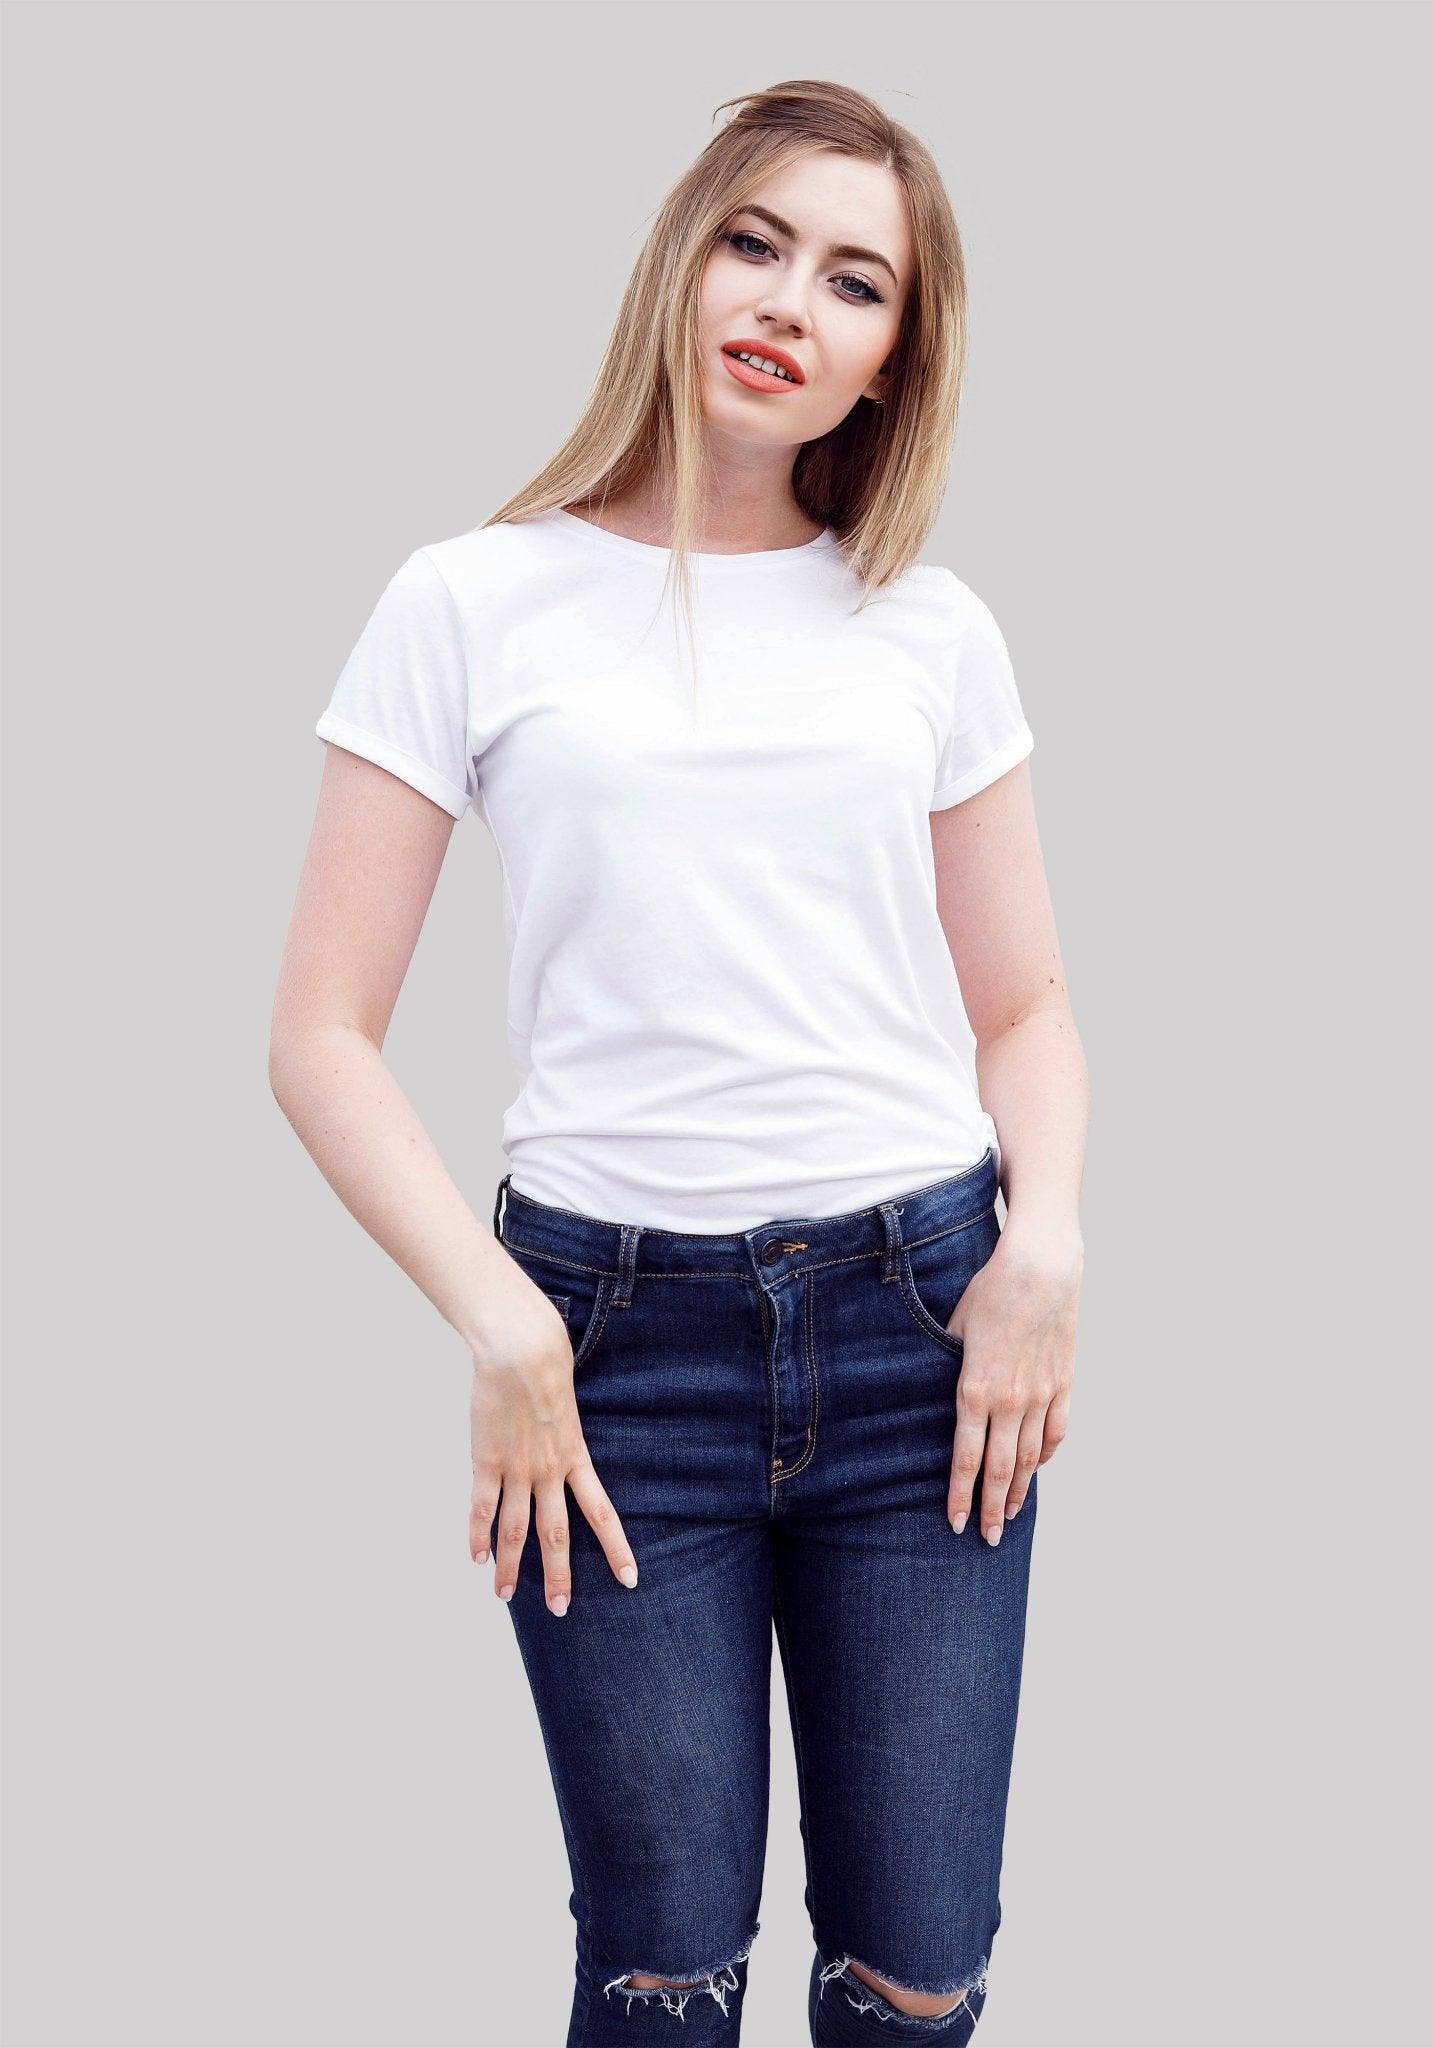 Women's Plain Solid t shirt white color - Hangout Hub